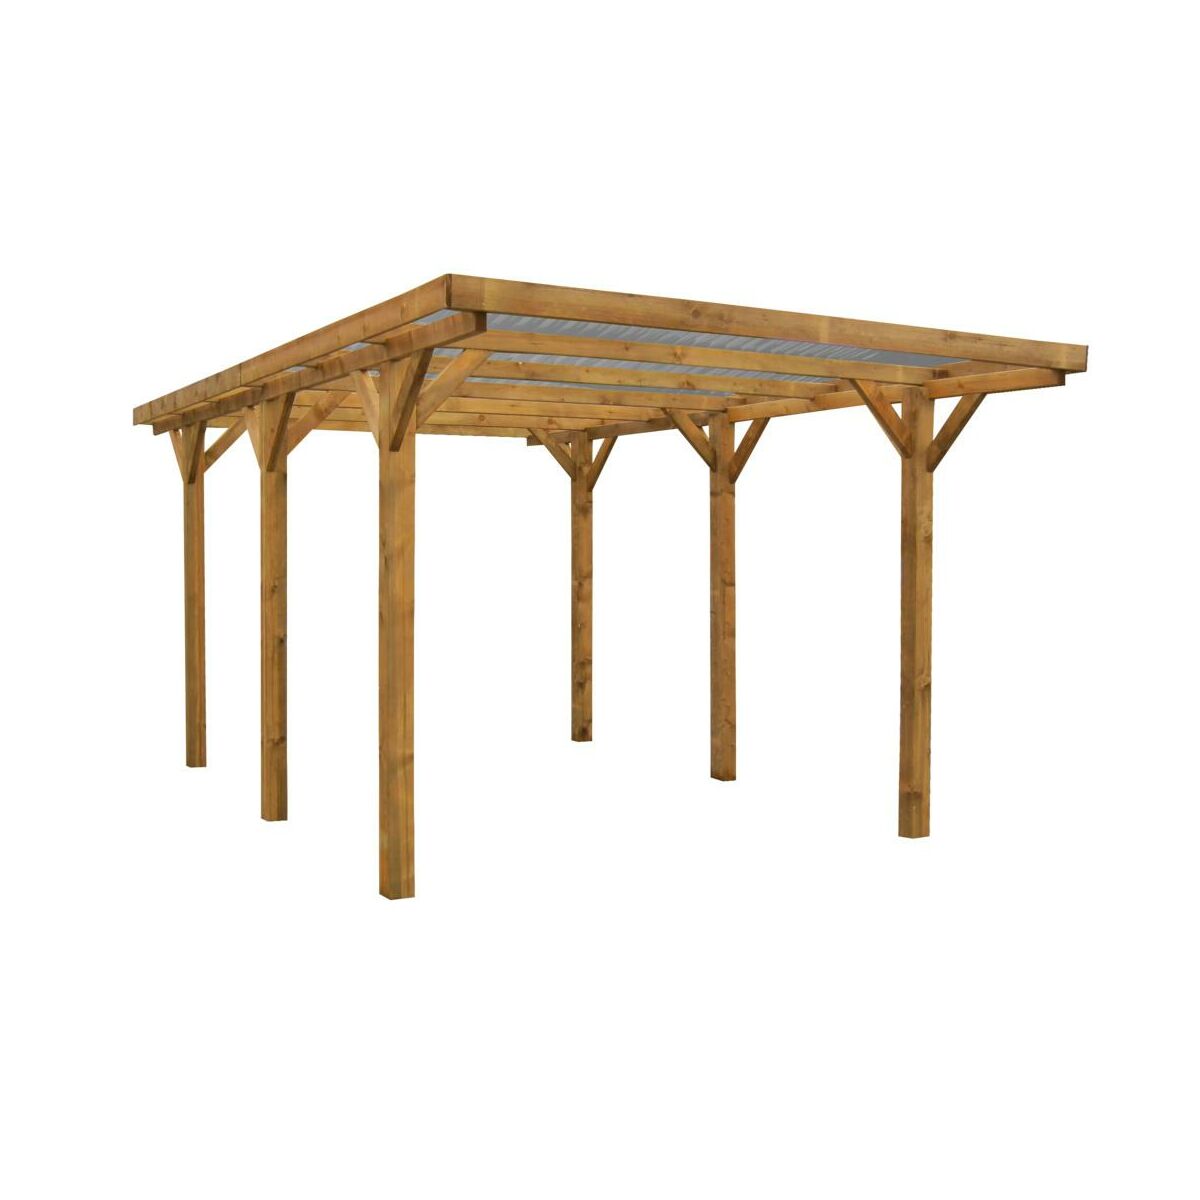 Wiata garażowa drewniana z dachem PVC 304x517x234 cm Werth-Holz